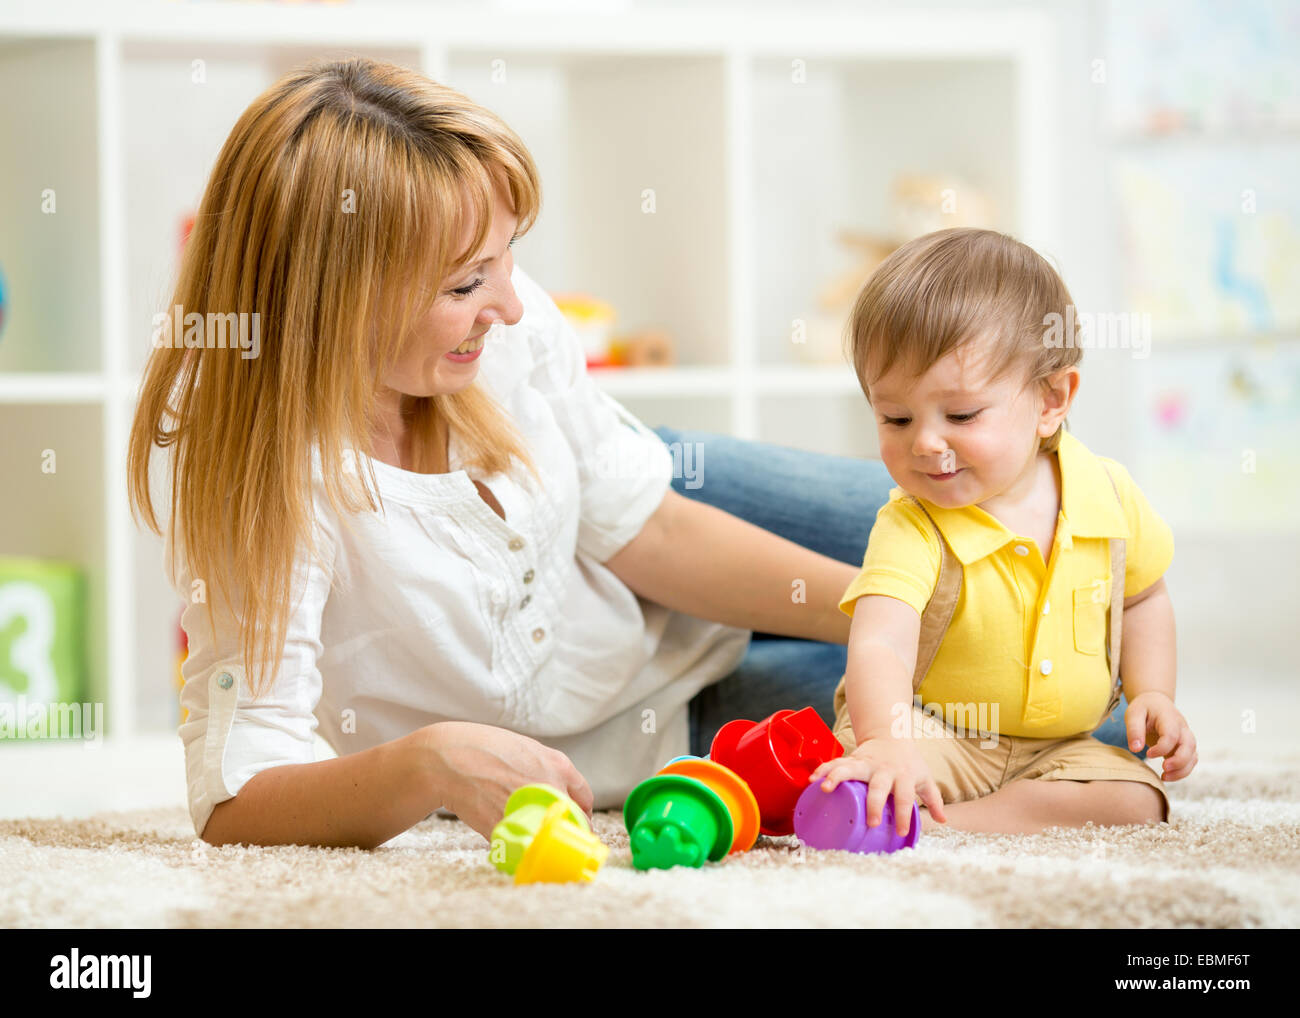 kleines Kind und Frau spielt mit Spielzeug Stockfoto